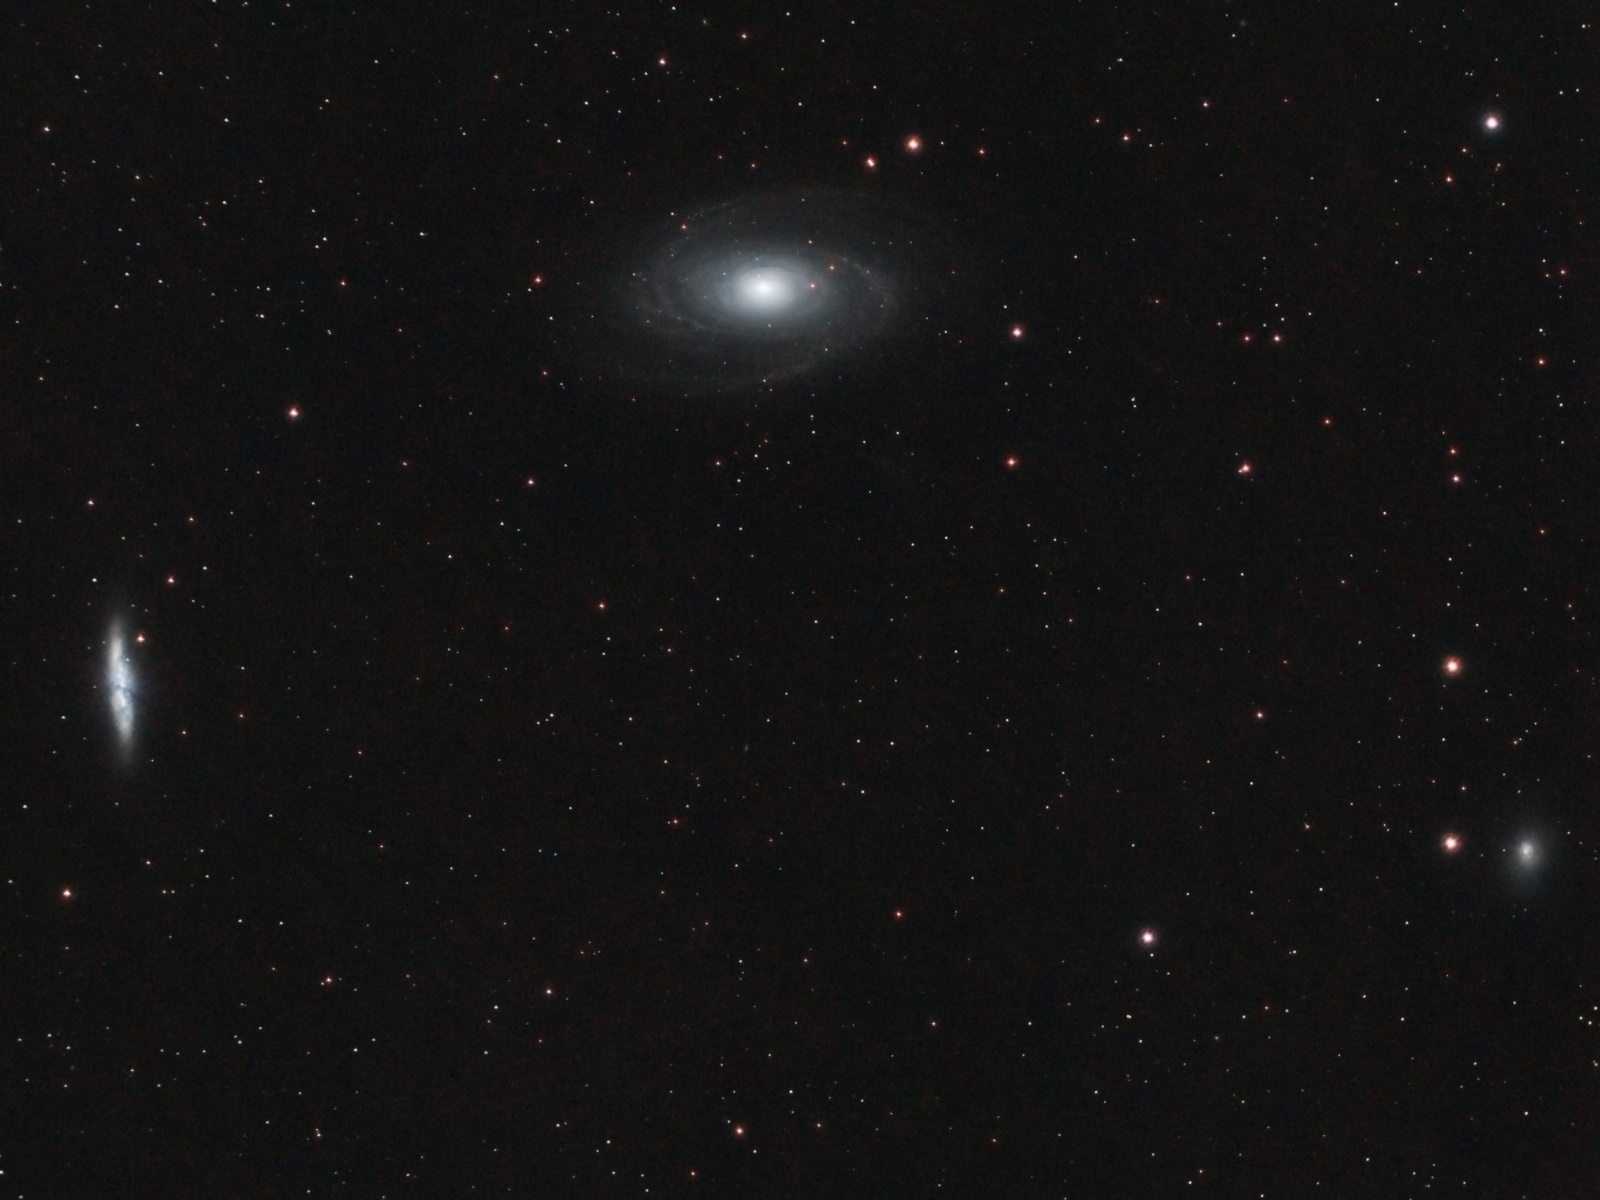 M81, M82, and NGC 3077